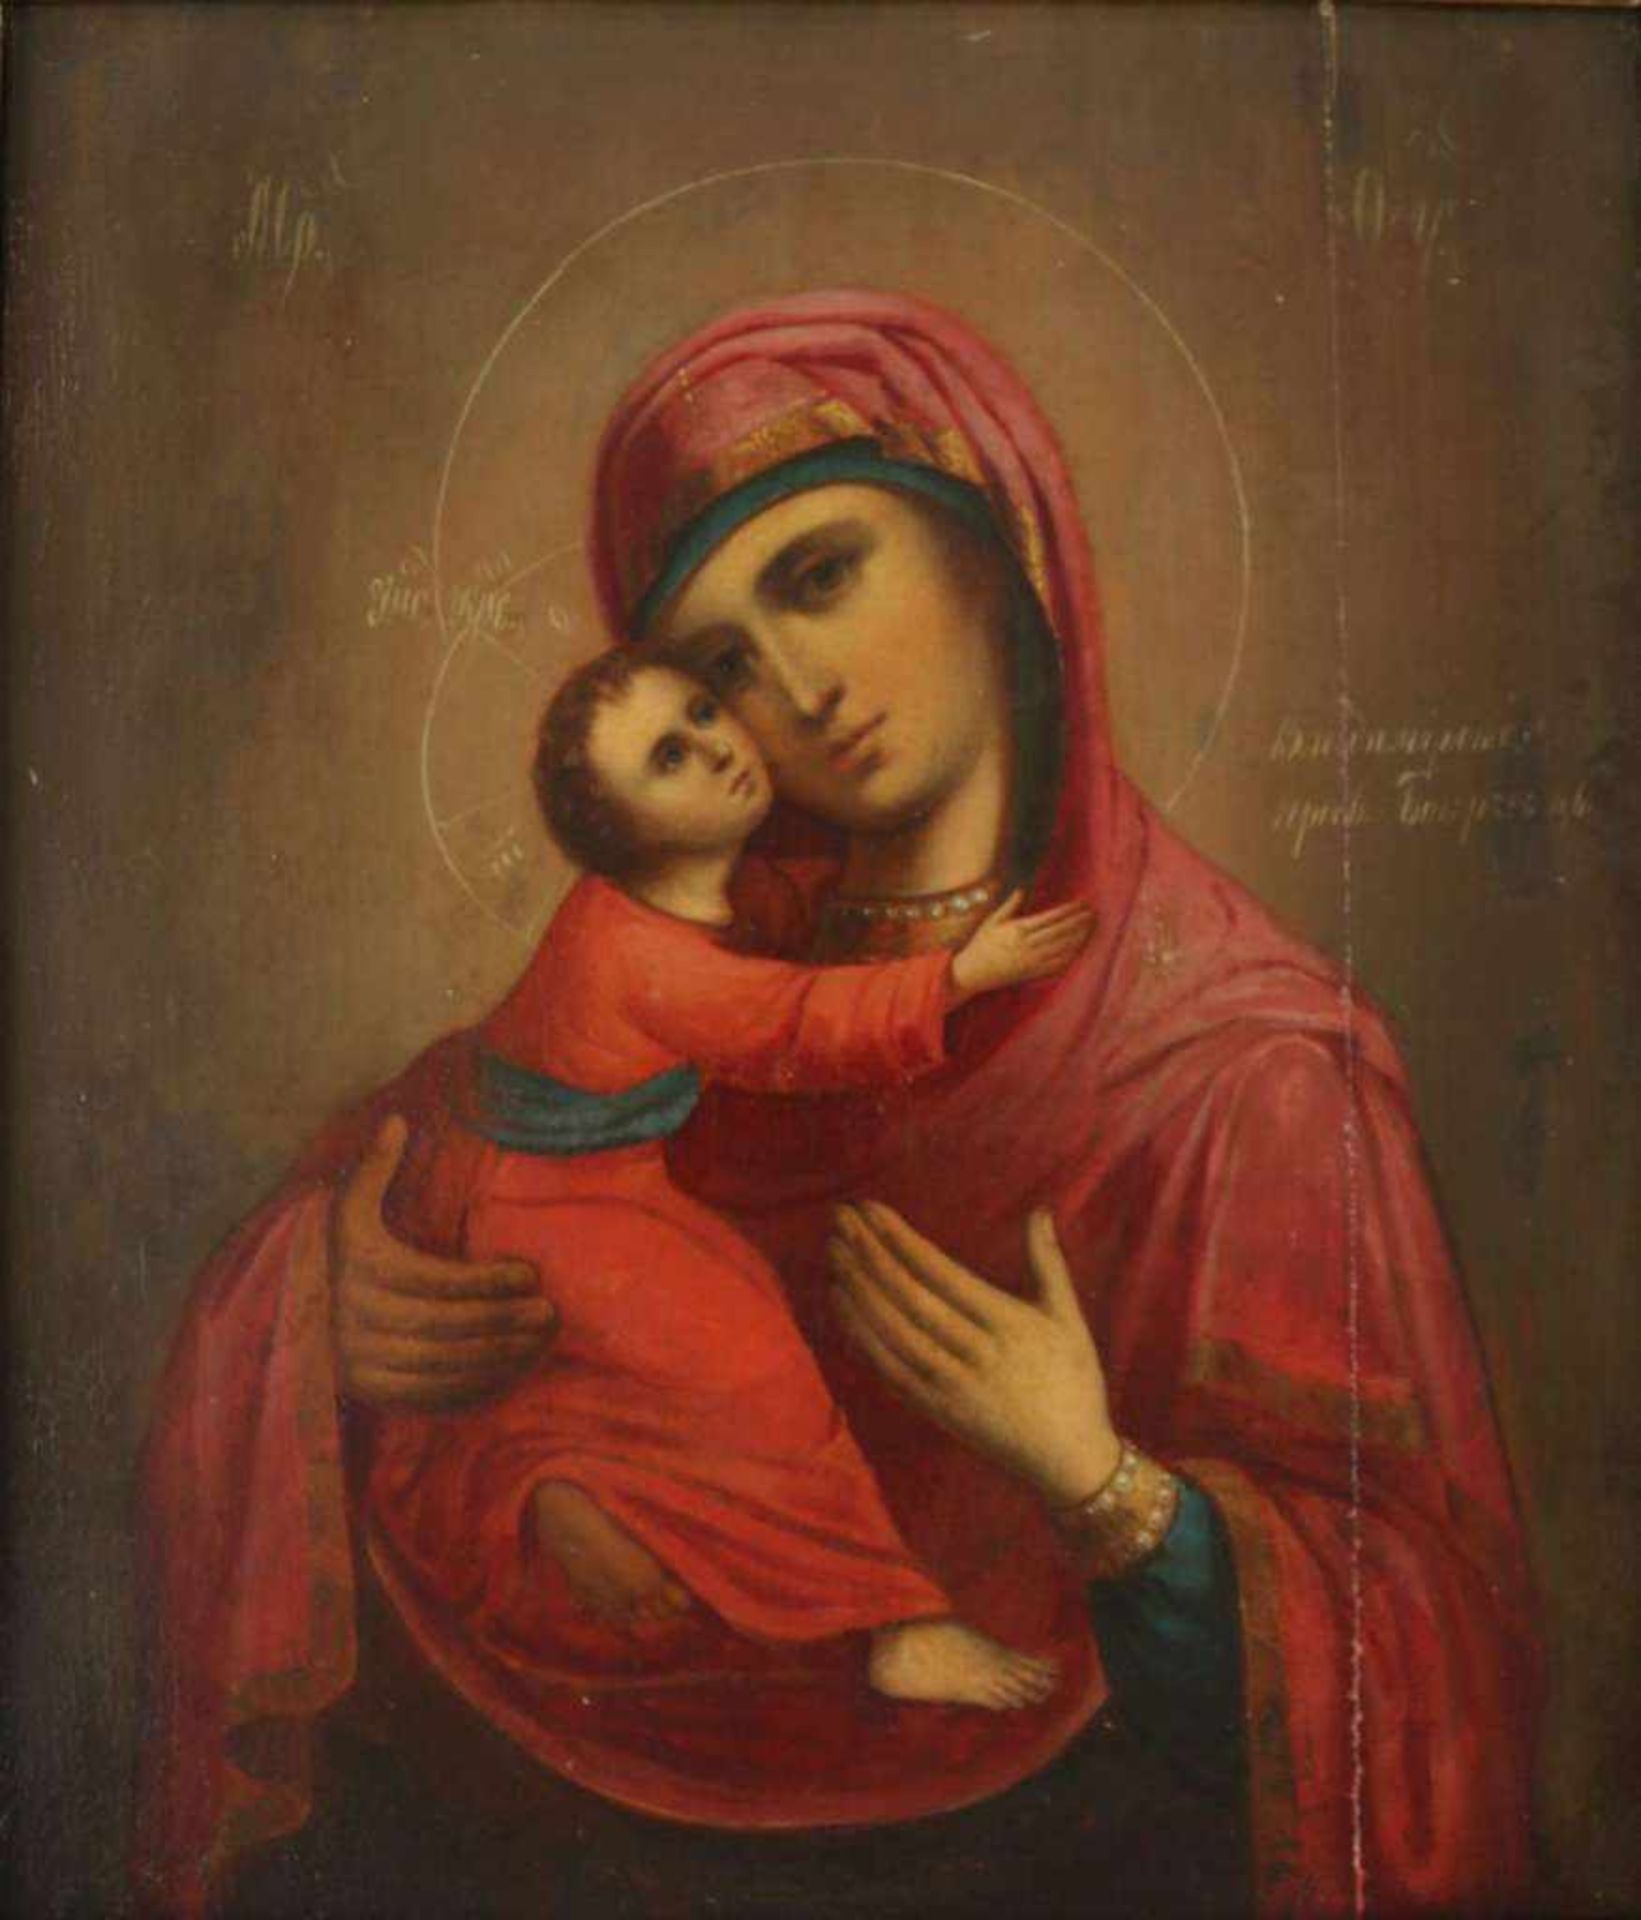 Heiligenbild Russland Anfang 19 Jh., Mutter Gottes mit dem Jesuskind, Tempera auf Holz,